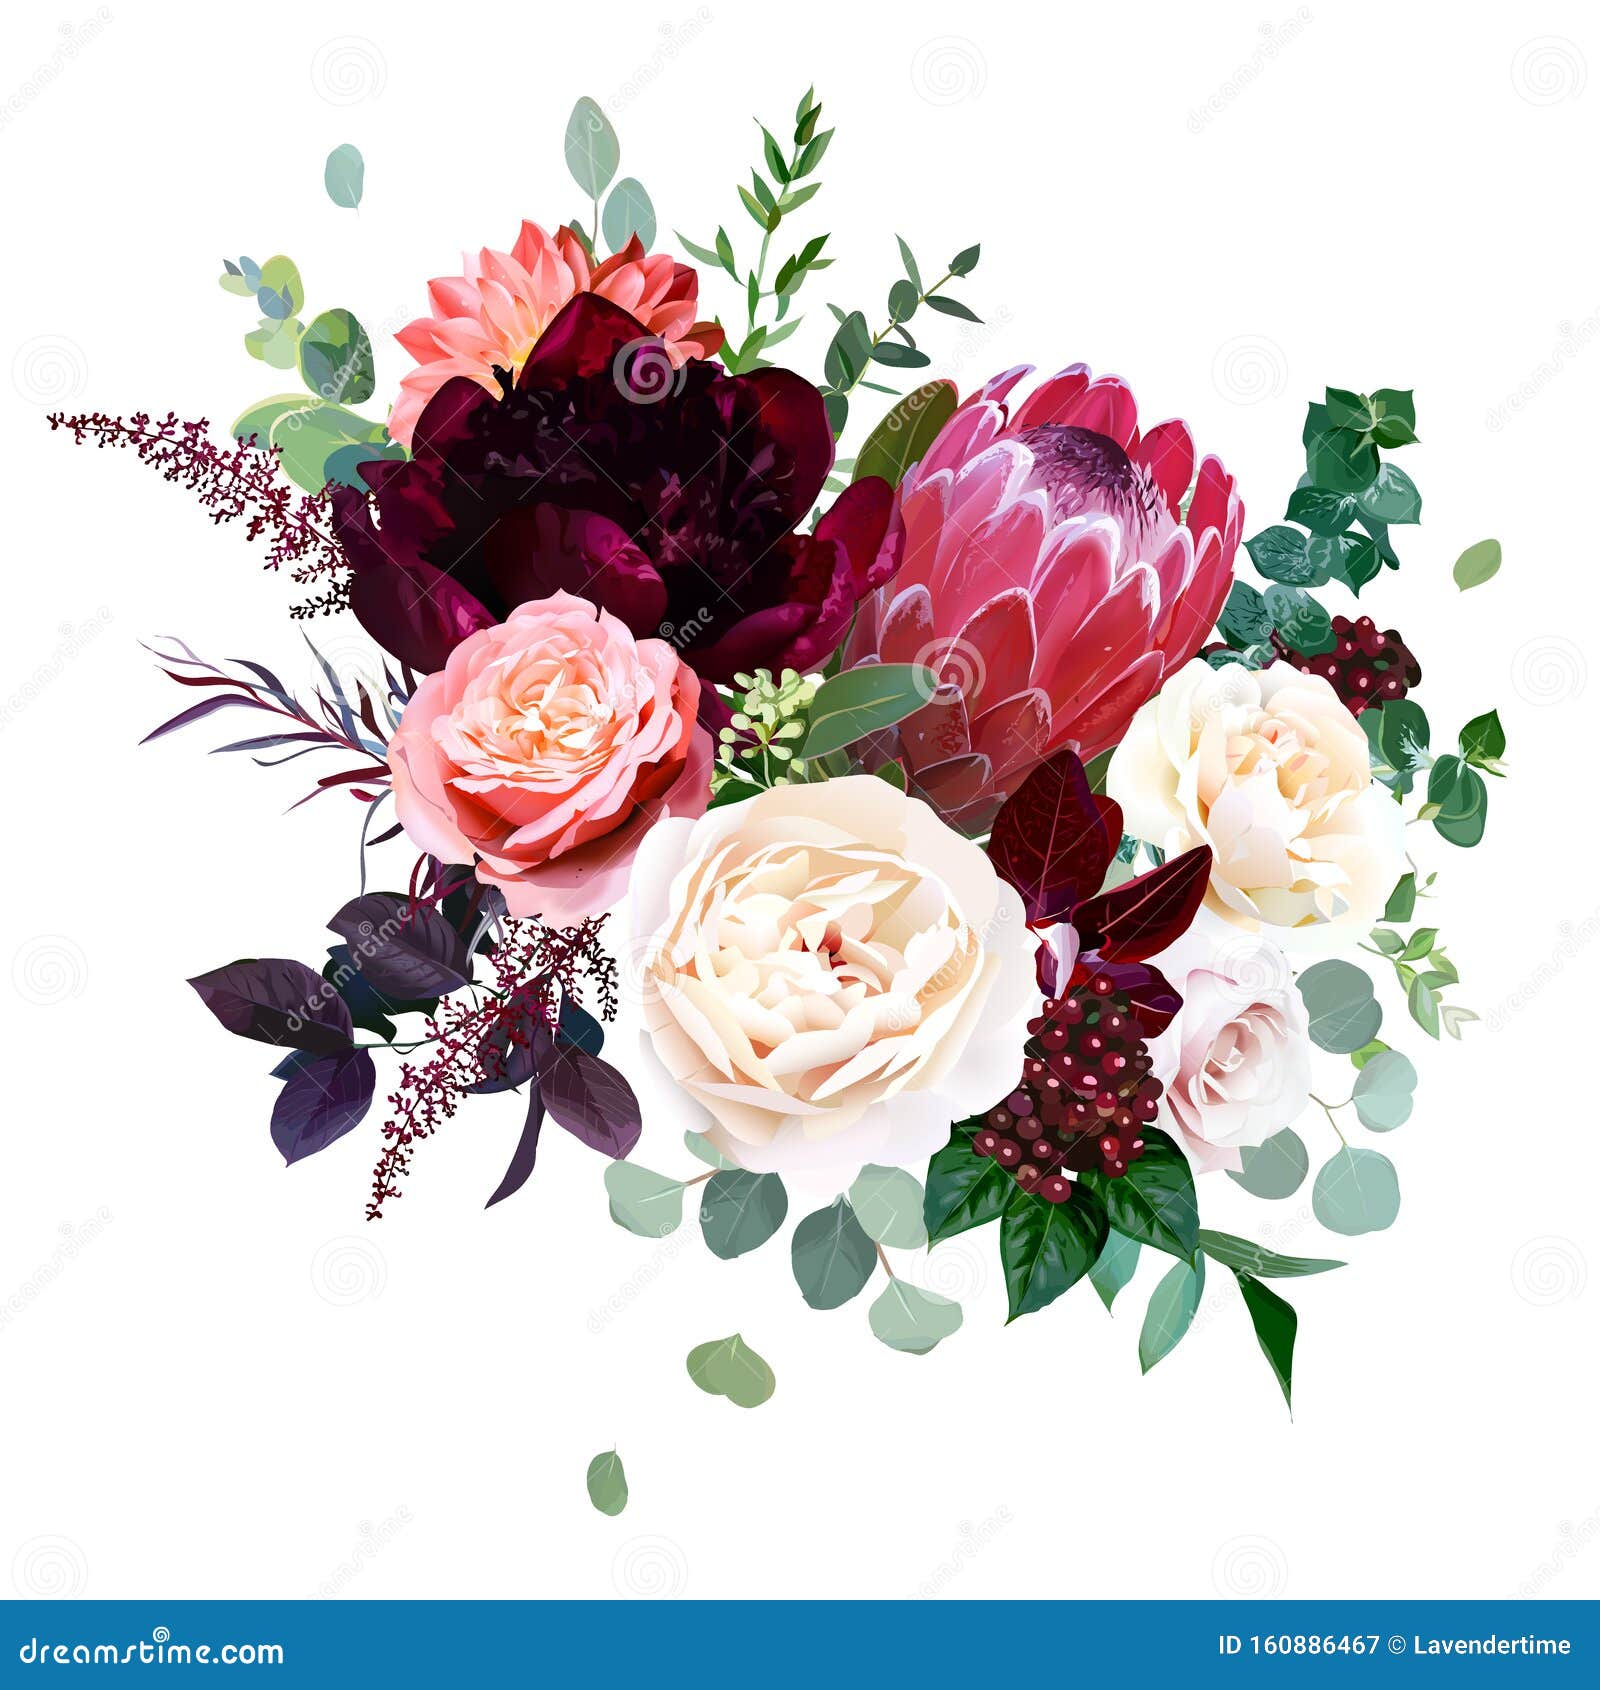 5 x Rose edelrose Crème/Rose Art Fleurs-Soie Fleurs 